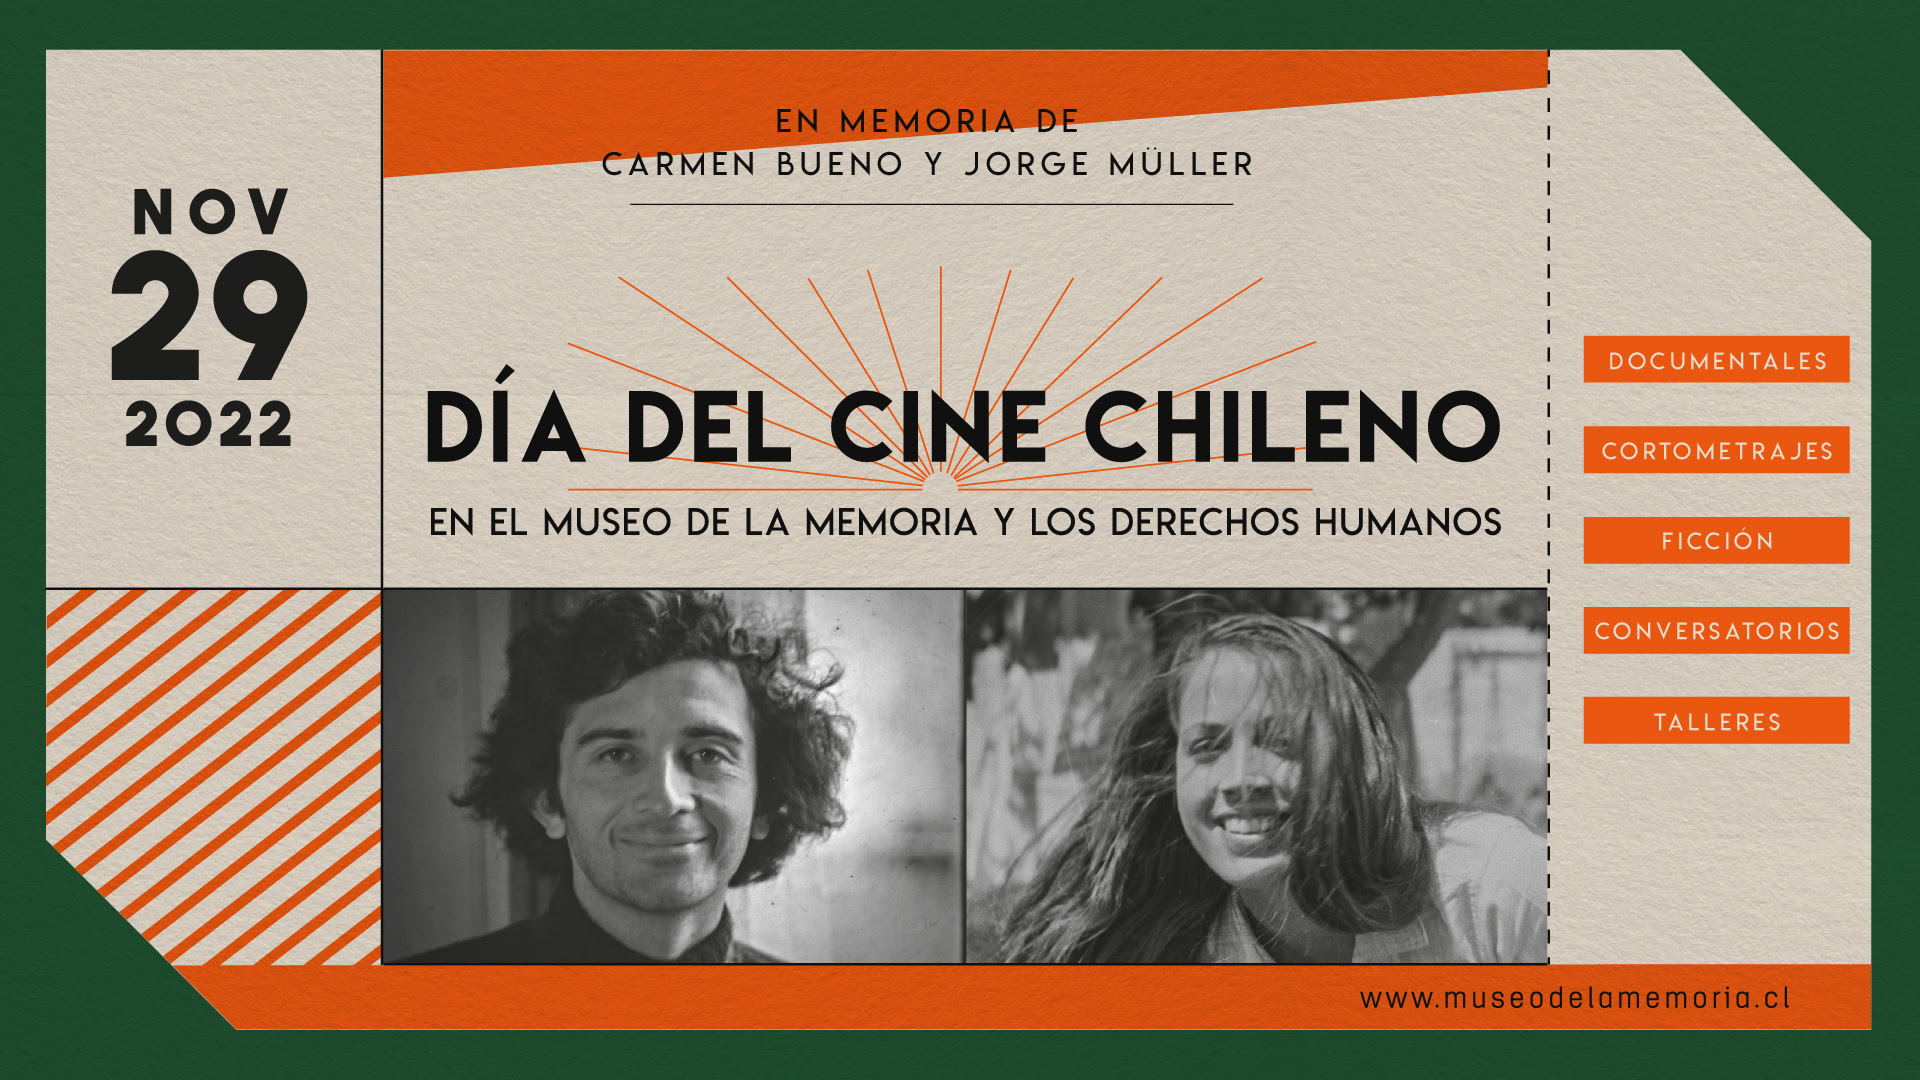 Museo de la Memoria y los DDHH conmemora el Día del Cine Chileno con homenaje a mujeres cineastas